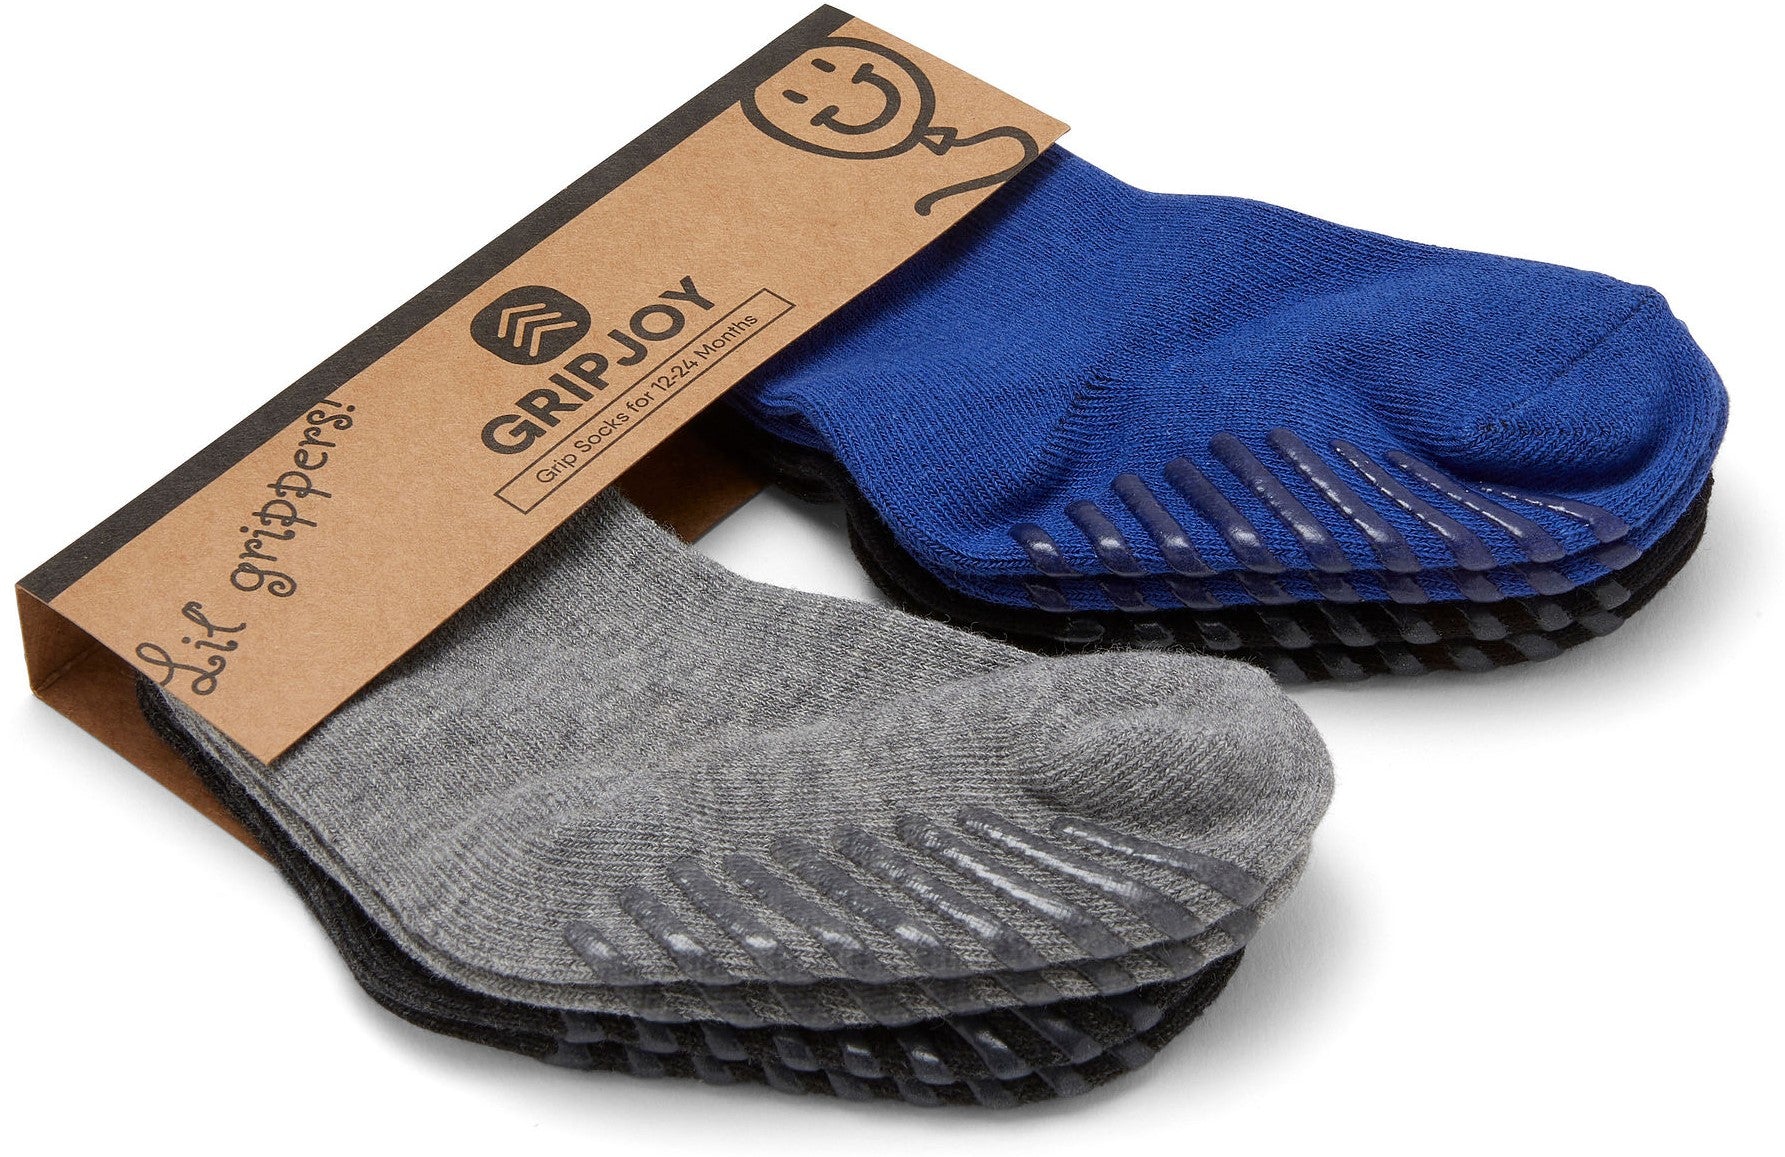 Grip socks for everyday wear, Best non-slip socks hospital